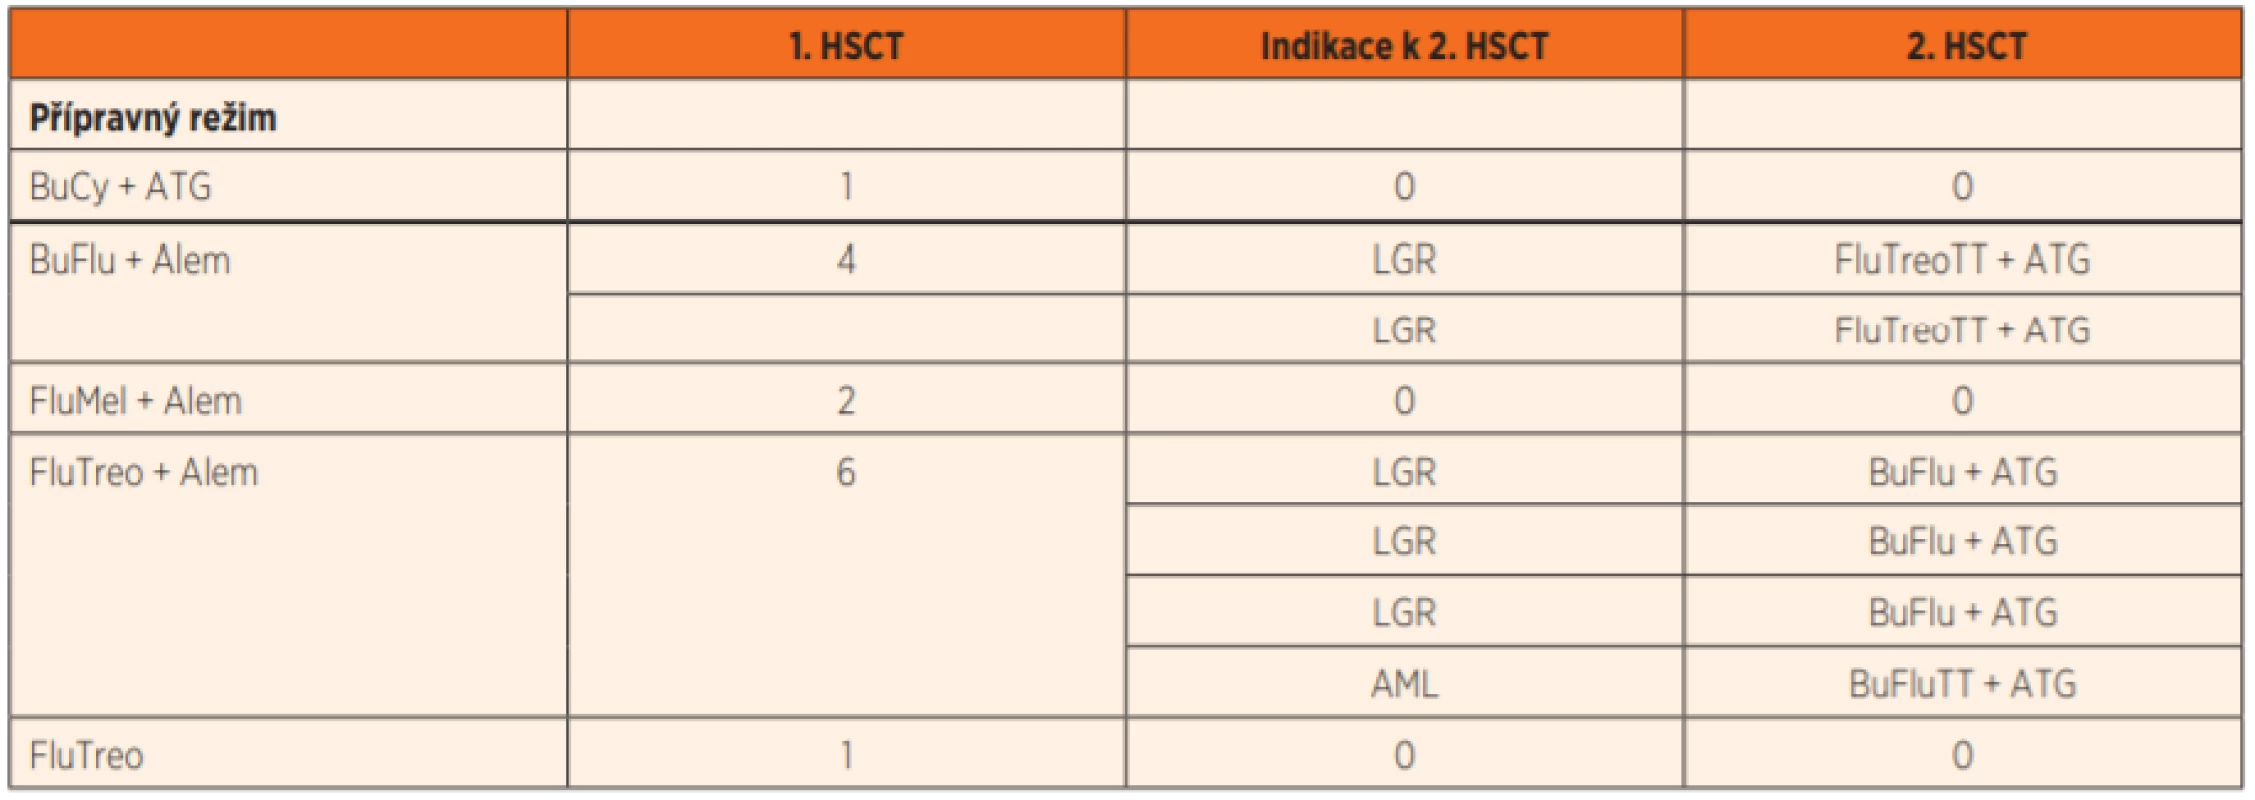 Charakteristika přípravných režimů pro první a druhou HSCT.